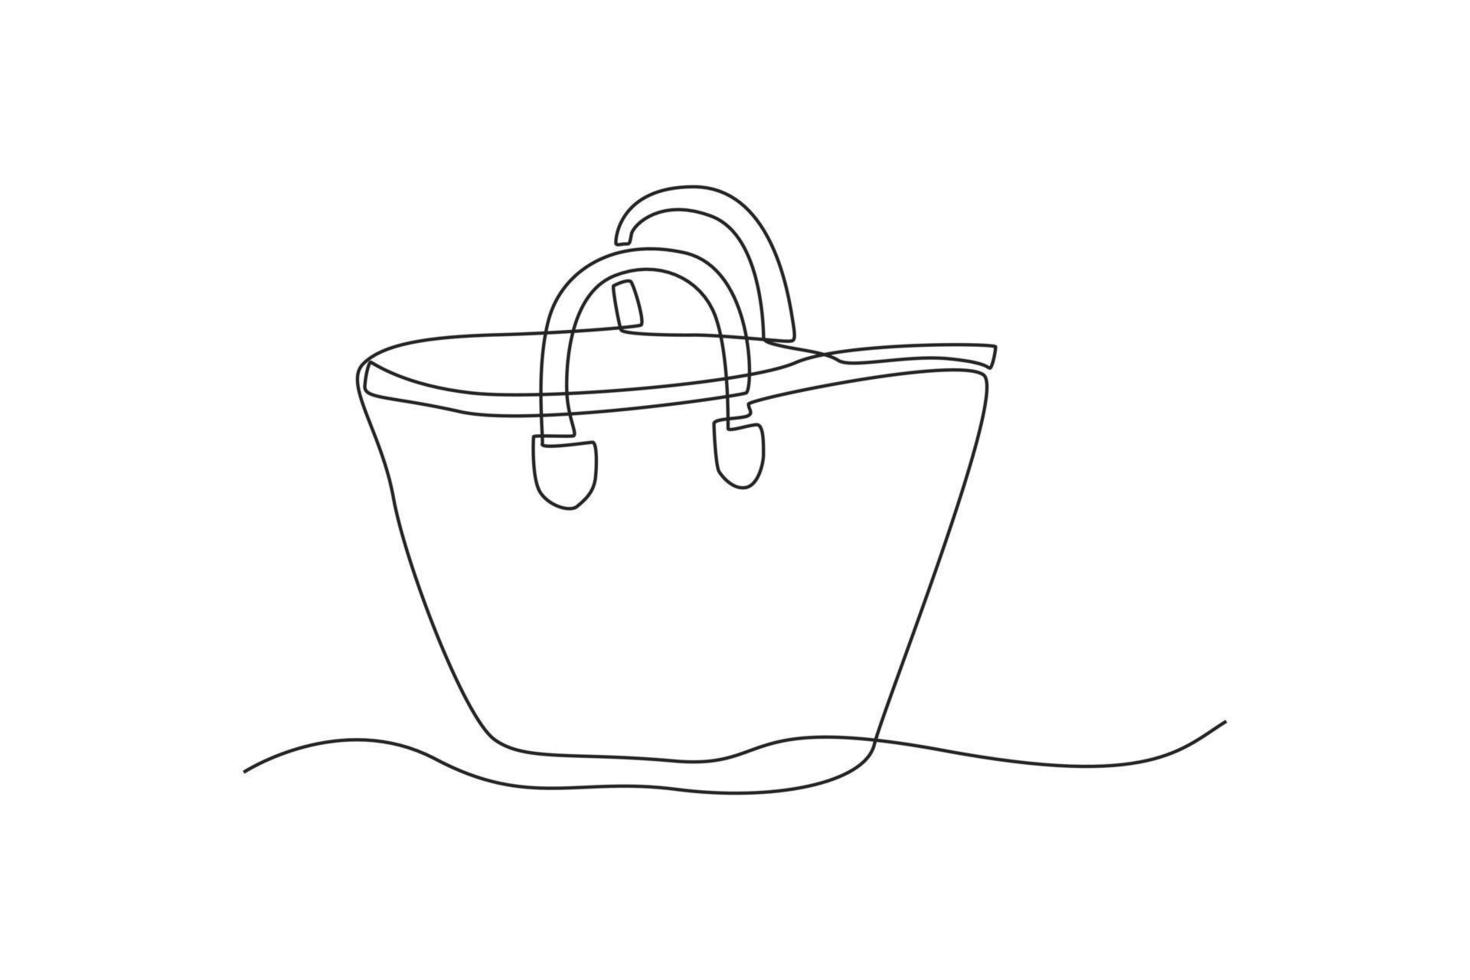 singolo uno linea disegno non plastica cestino per ridurre rifiuto plastica. zero rifiuto concetto. continuo linea disegnare design grafico vettore illustrazione.